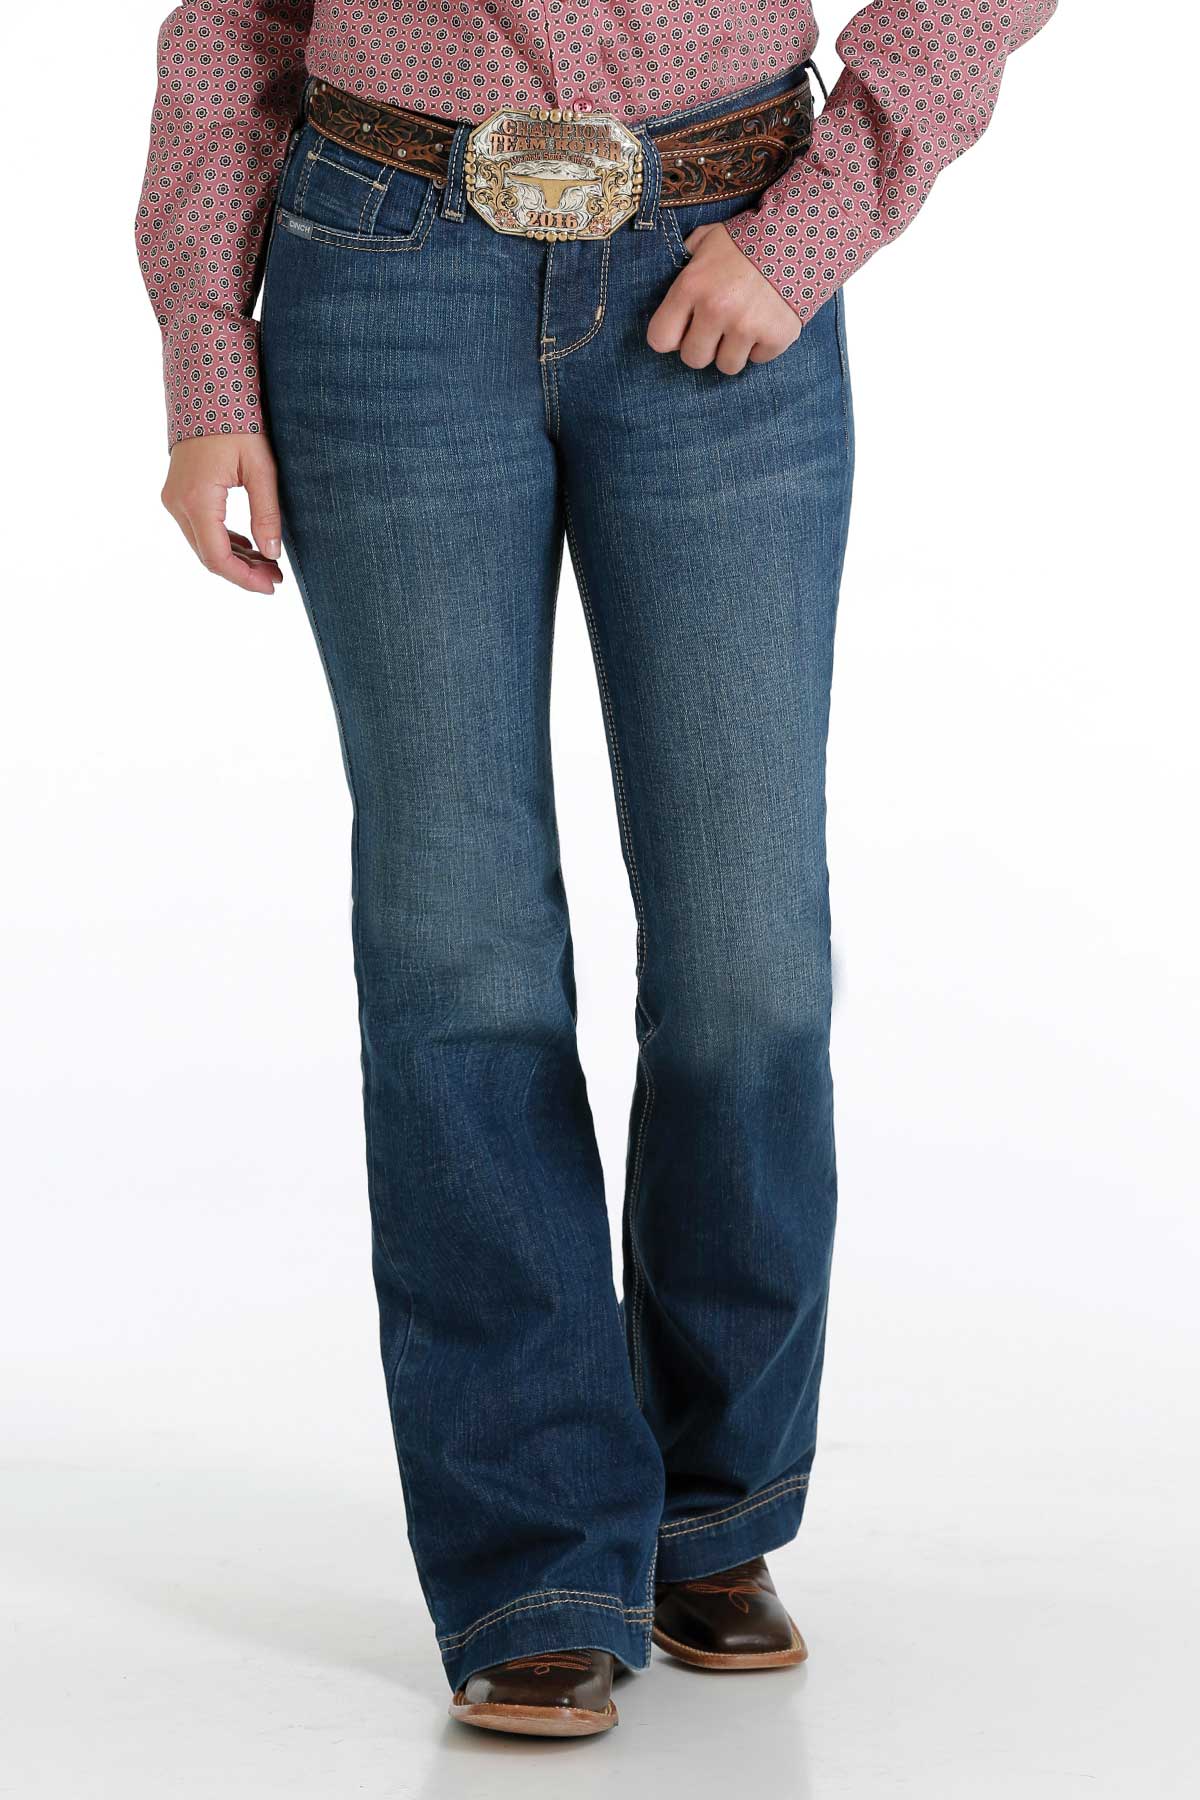 Cinch Women's Lynden Trouser Jean